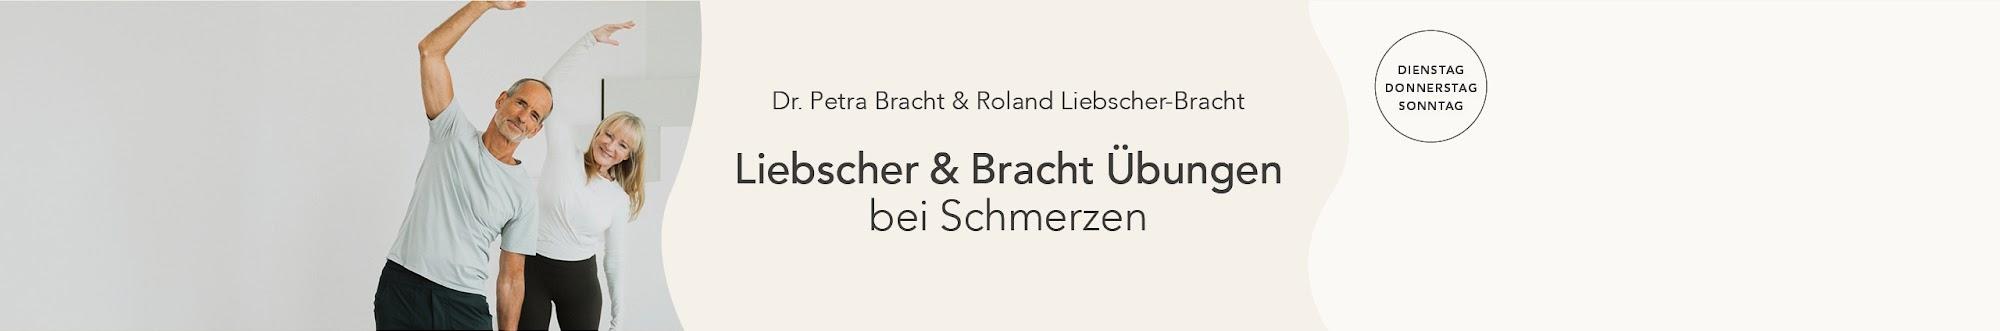 Liebscher & Bracht | Die Schmerzspezialisten